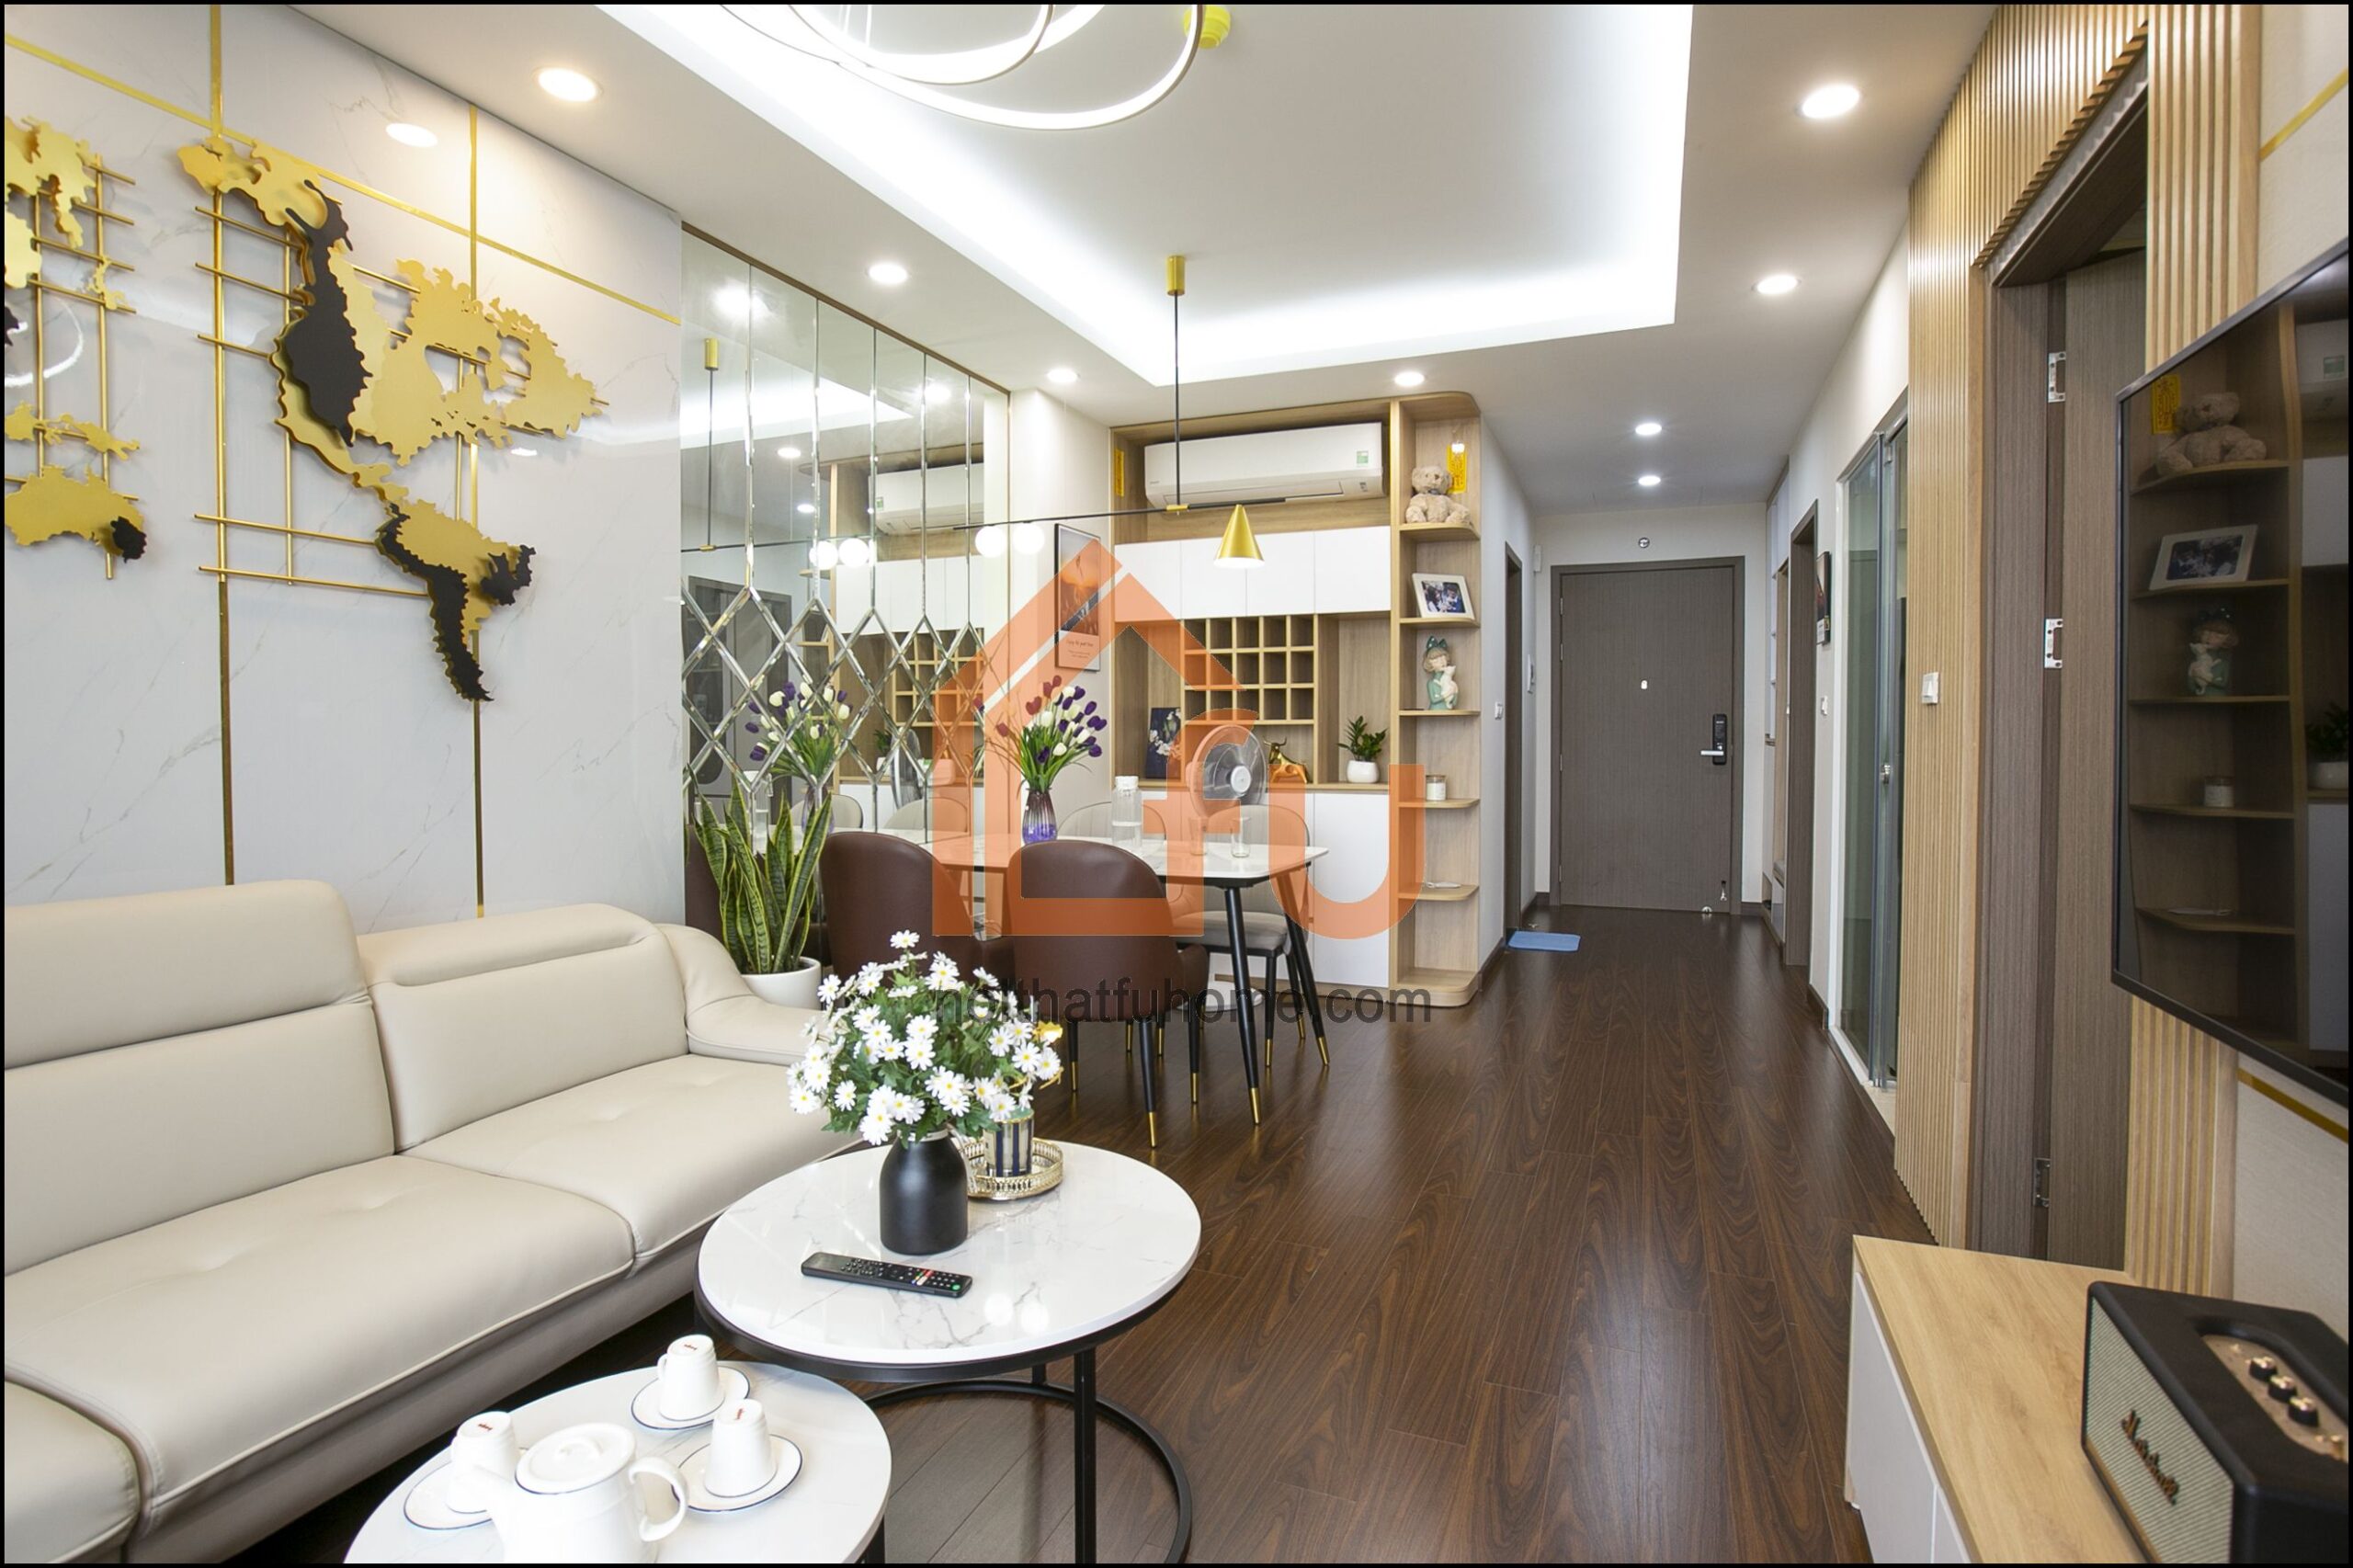 Thiết kế chung cư – Tất tần tật những thông tin cần thiết để có căn hộ đẹp như ý